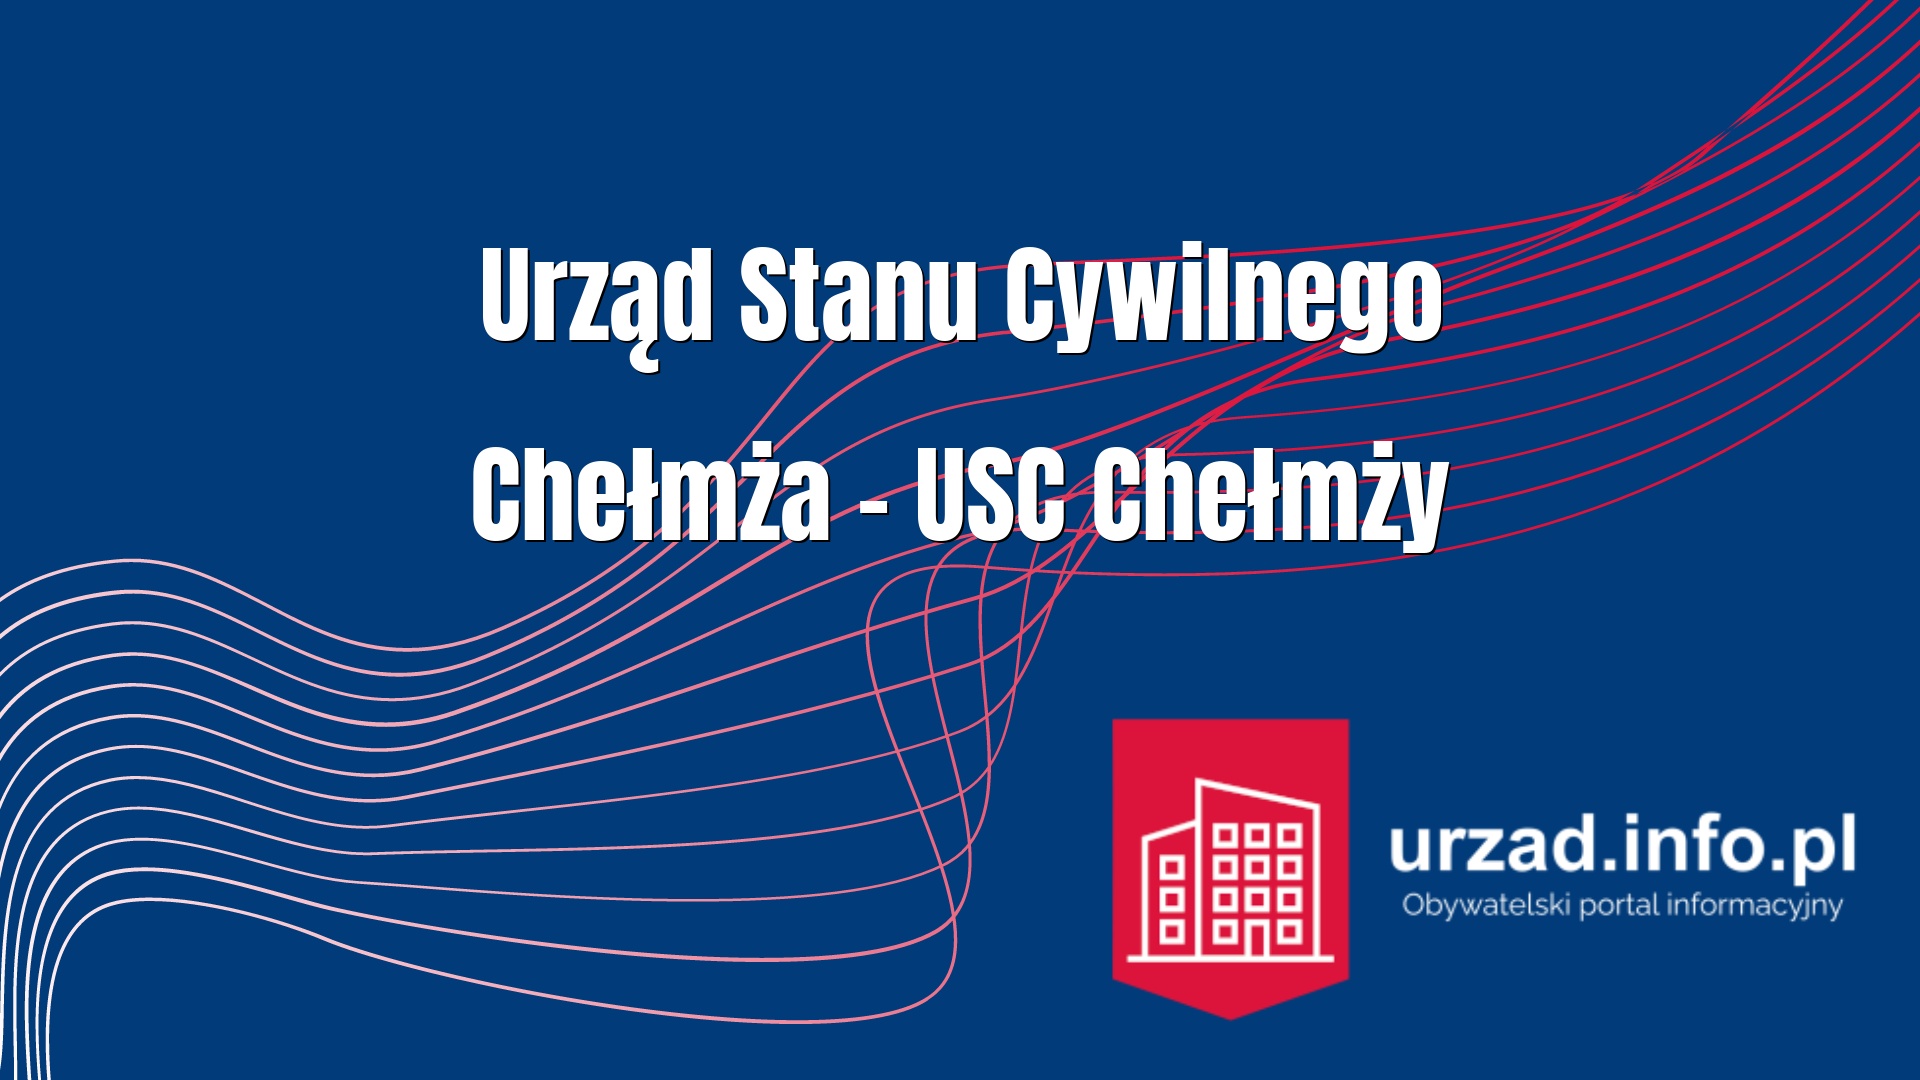 Urząd Stanu Cywilnego Chełmża – USC Chełmży